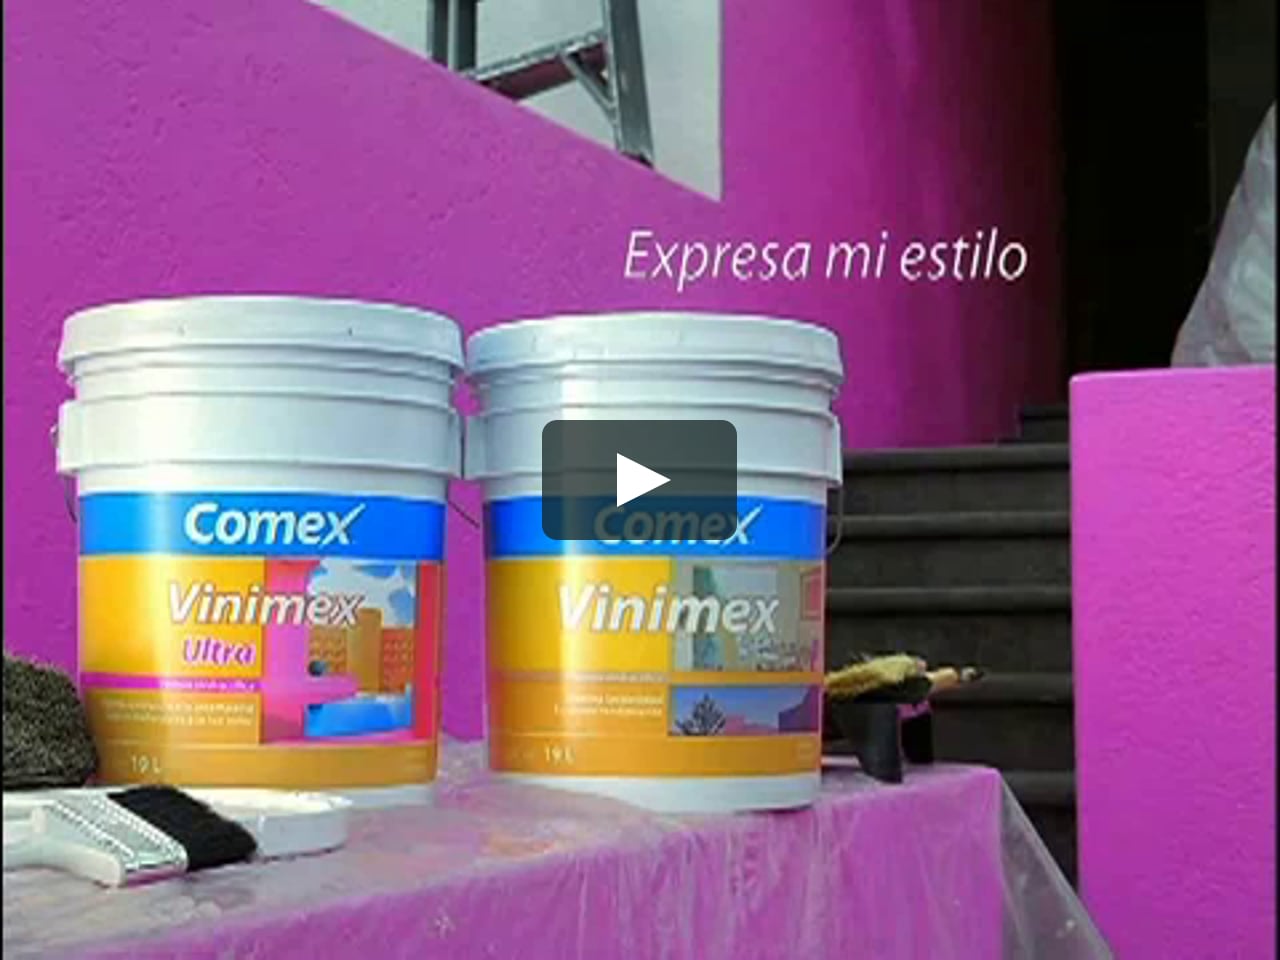 Comex Vinimex Pintor on Vimeo